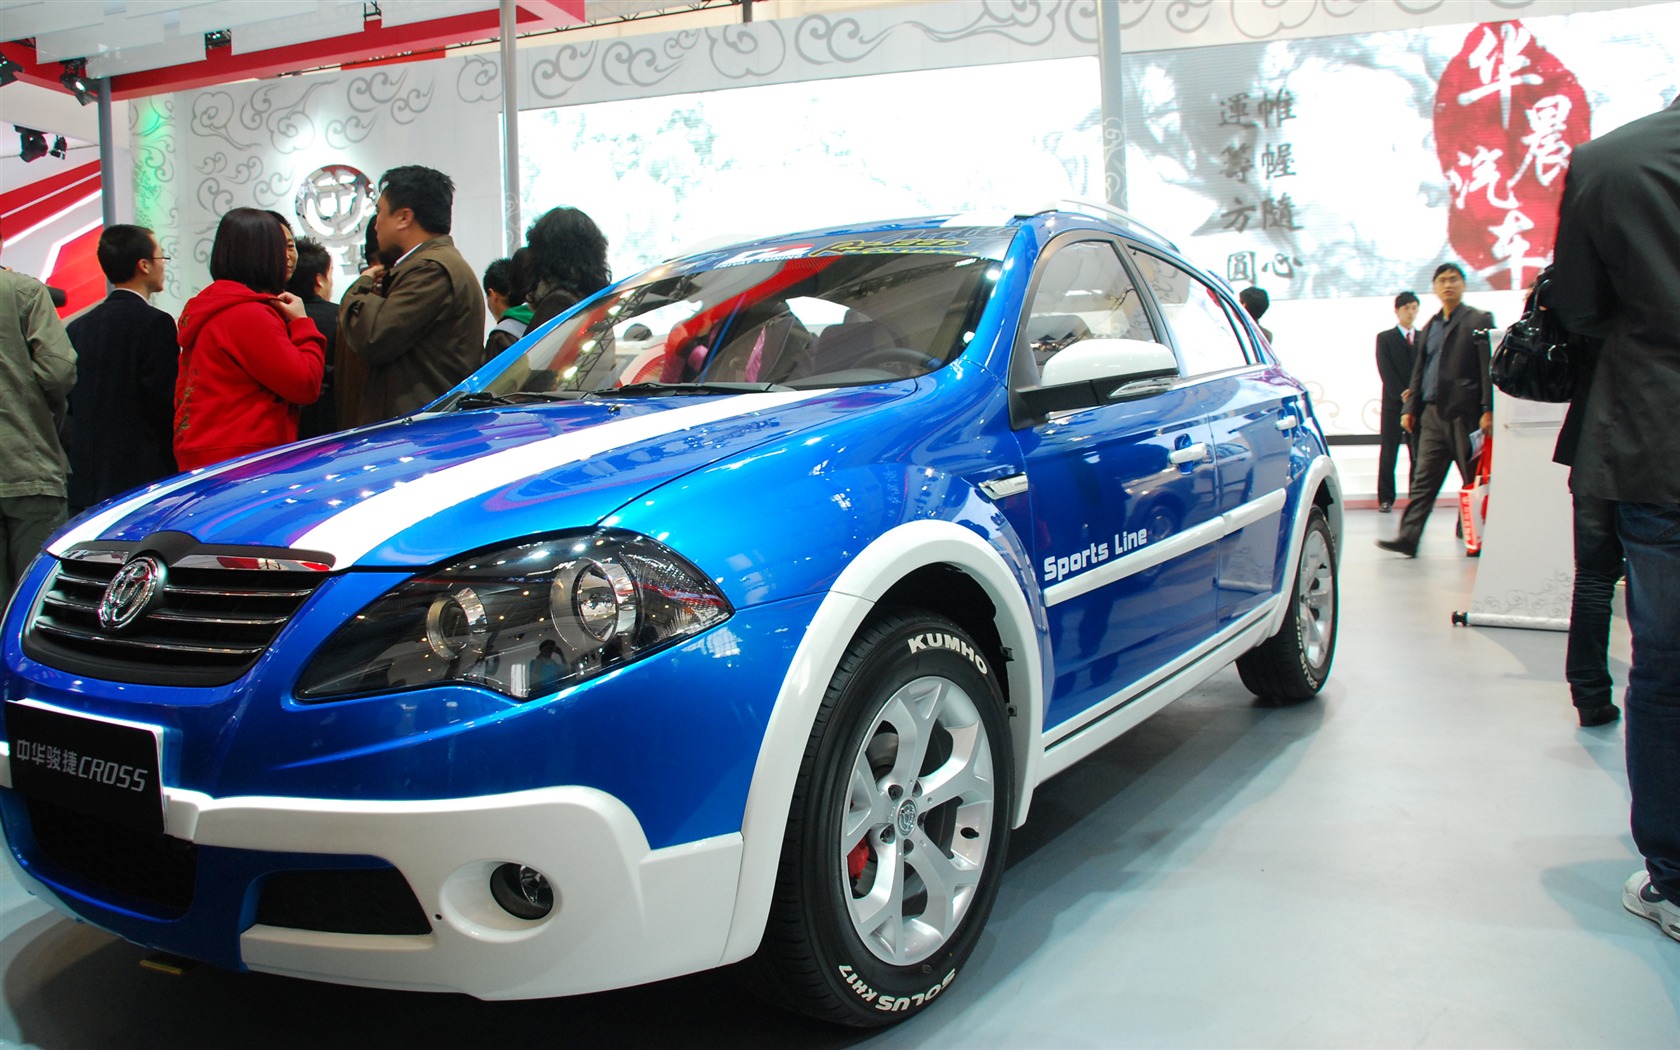 2010北京国际车展(一) (z321x123作品)21 - 1680x1050